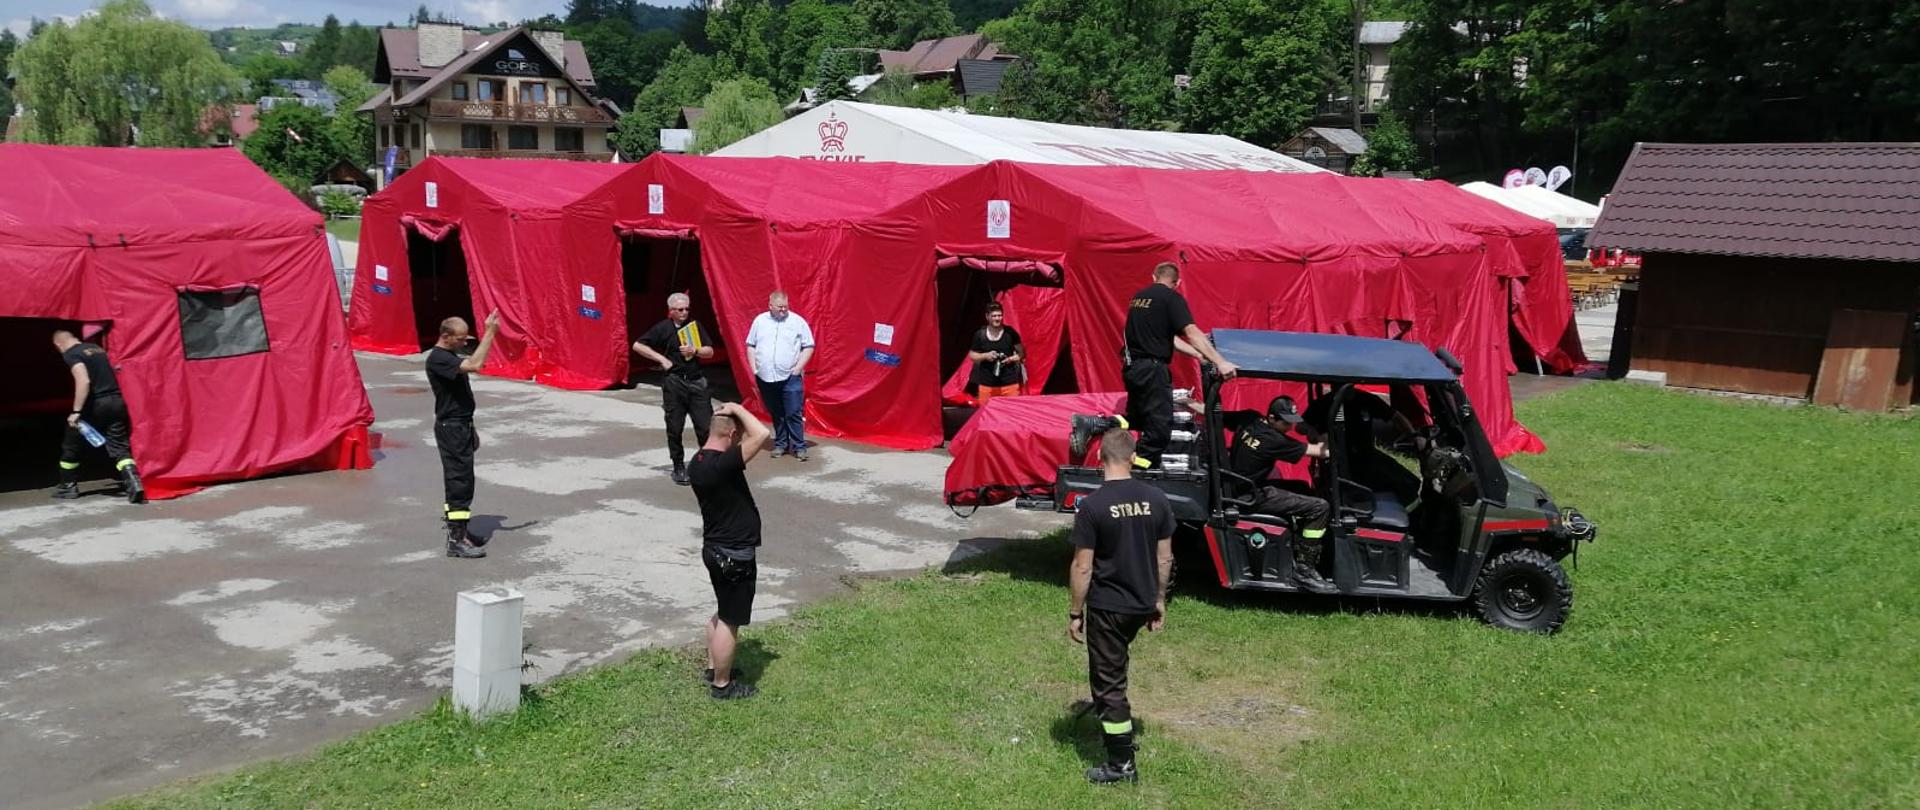 na zdjęciu cztery namioty stelażowe rozstawione na placu pod koleją linową w Szczawnicy, strażacy przy pomocy quada przewożą kolejne namioty które posłużą jako plenerowy punkt szczepień